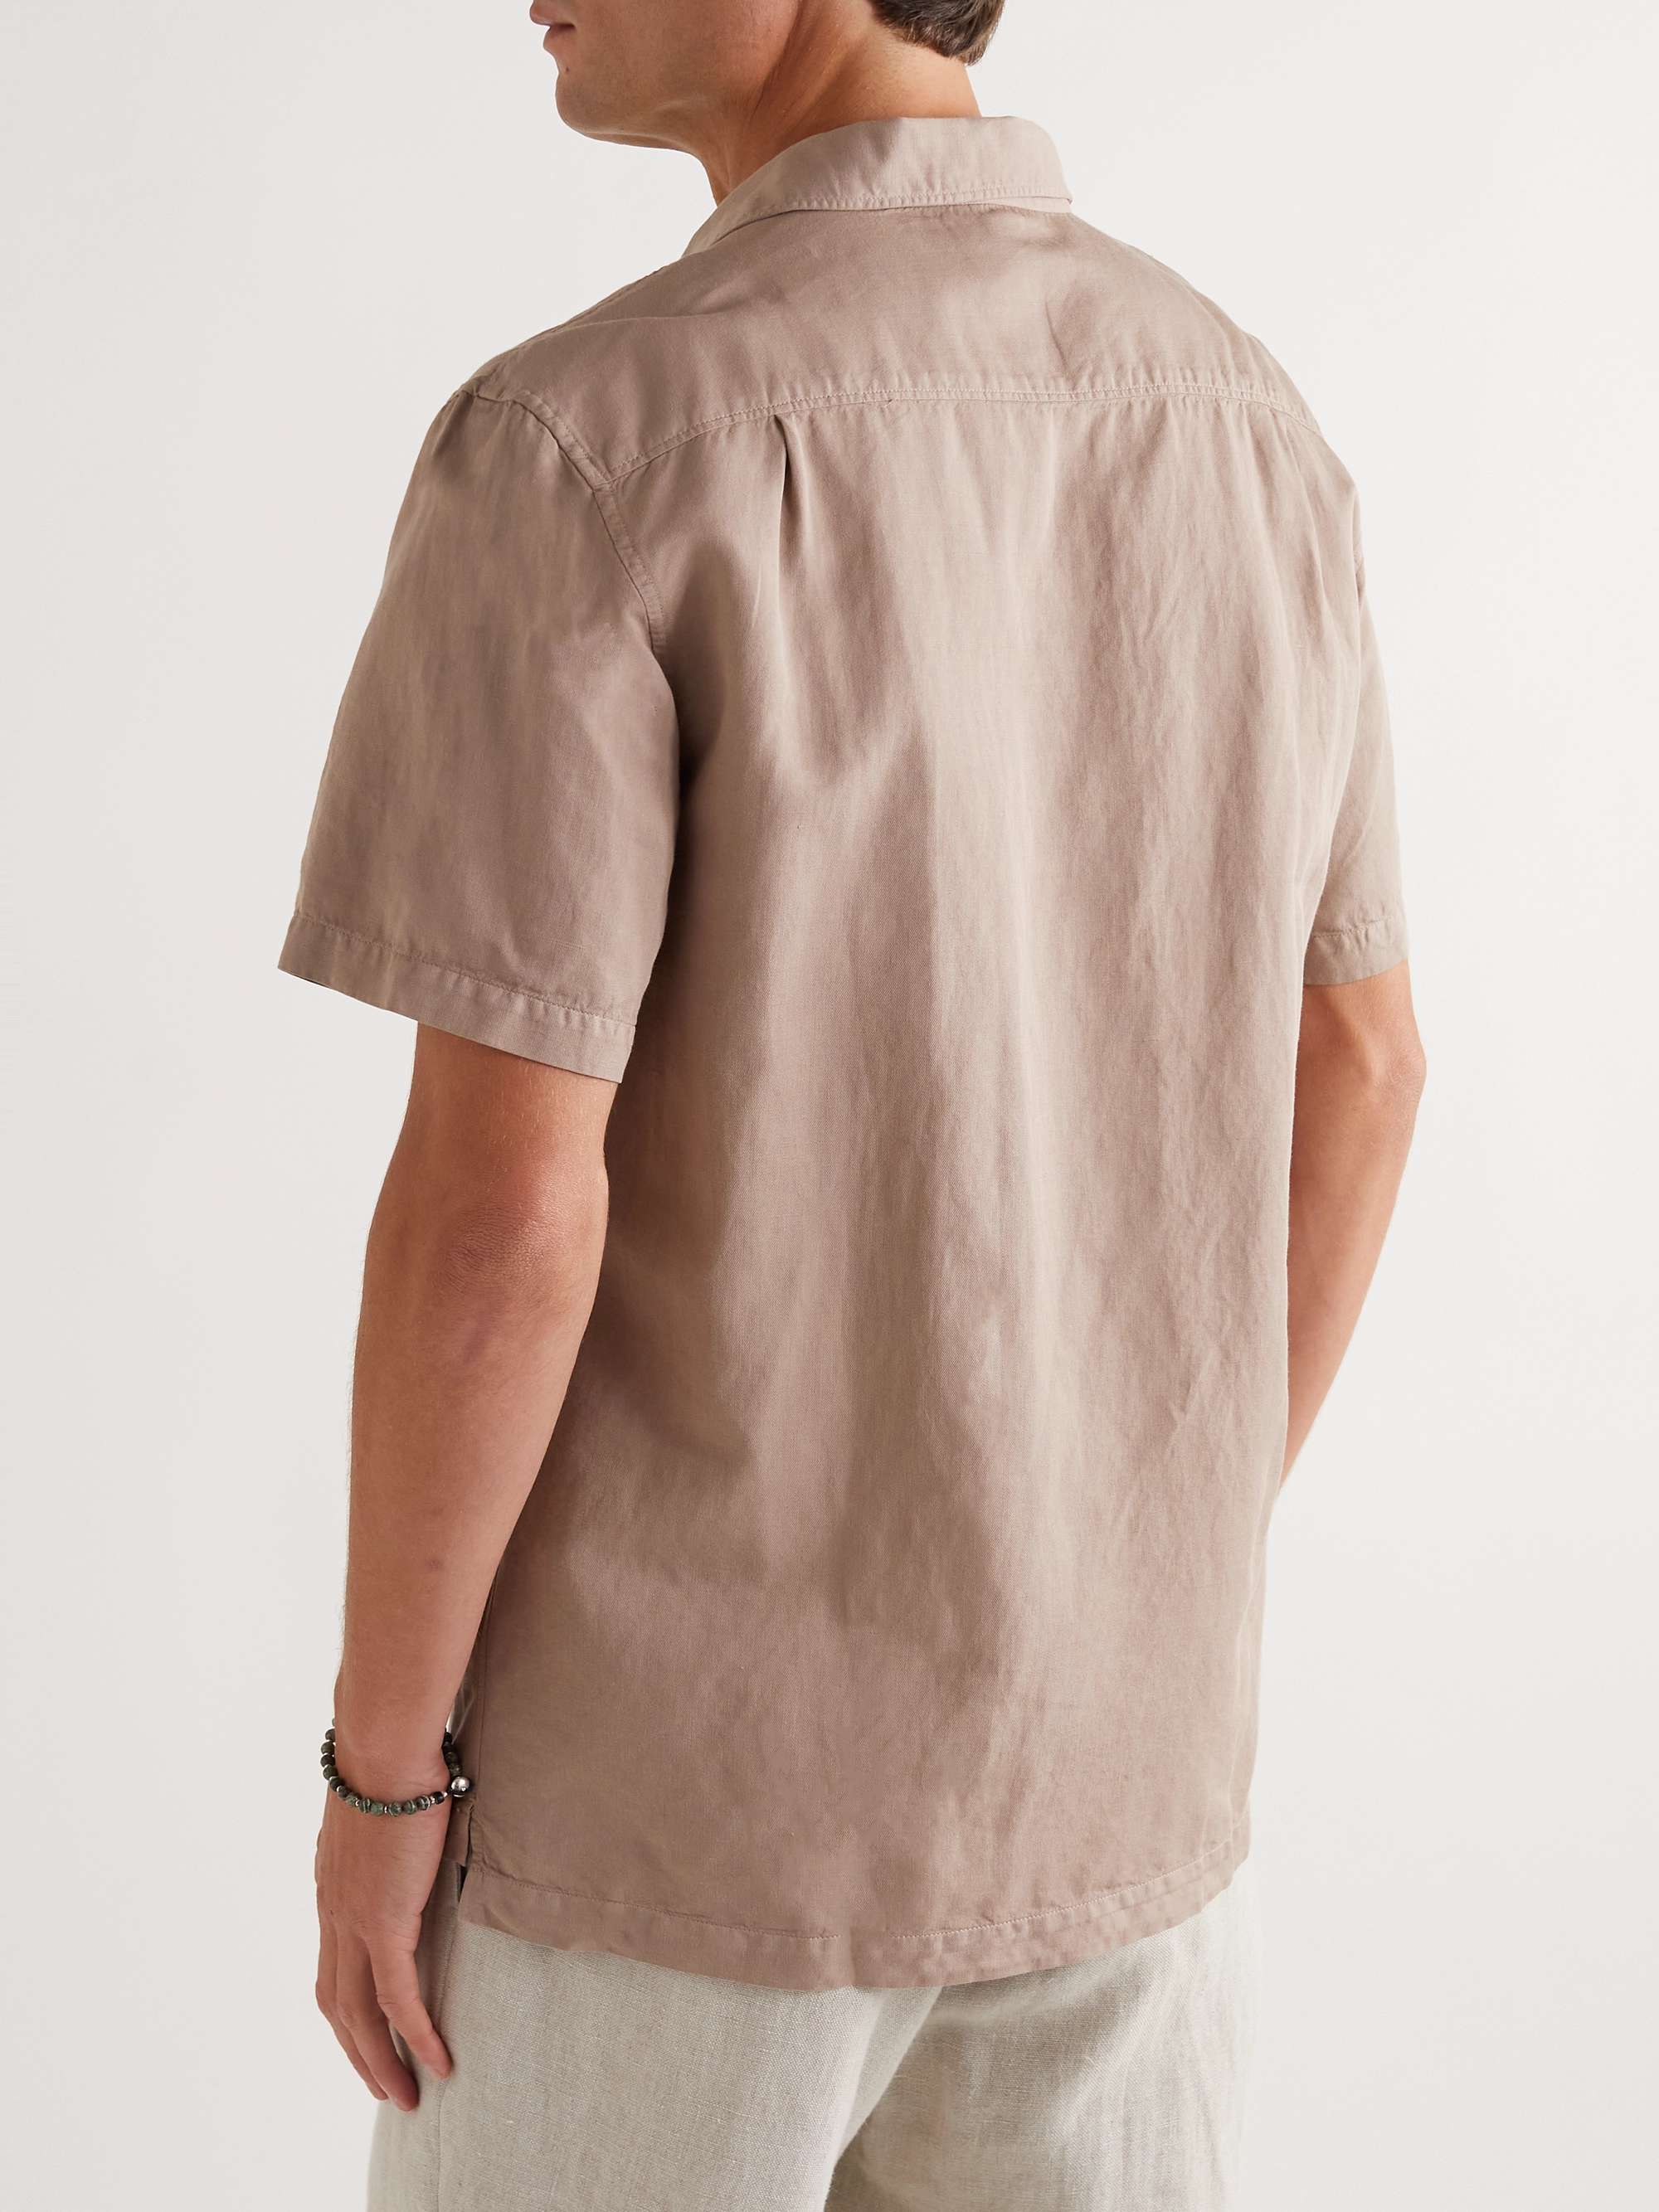 MR P. Convertible-Collar Garment-Dyed Cotton and Linen-Blend Shirt